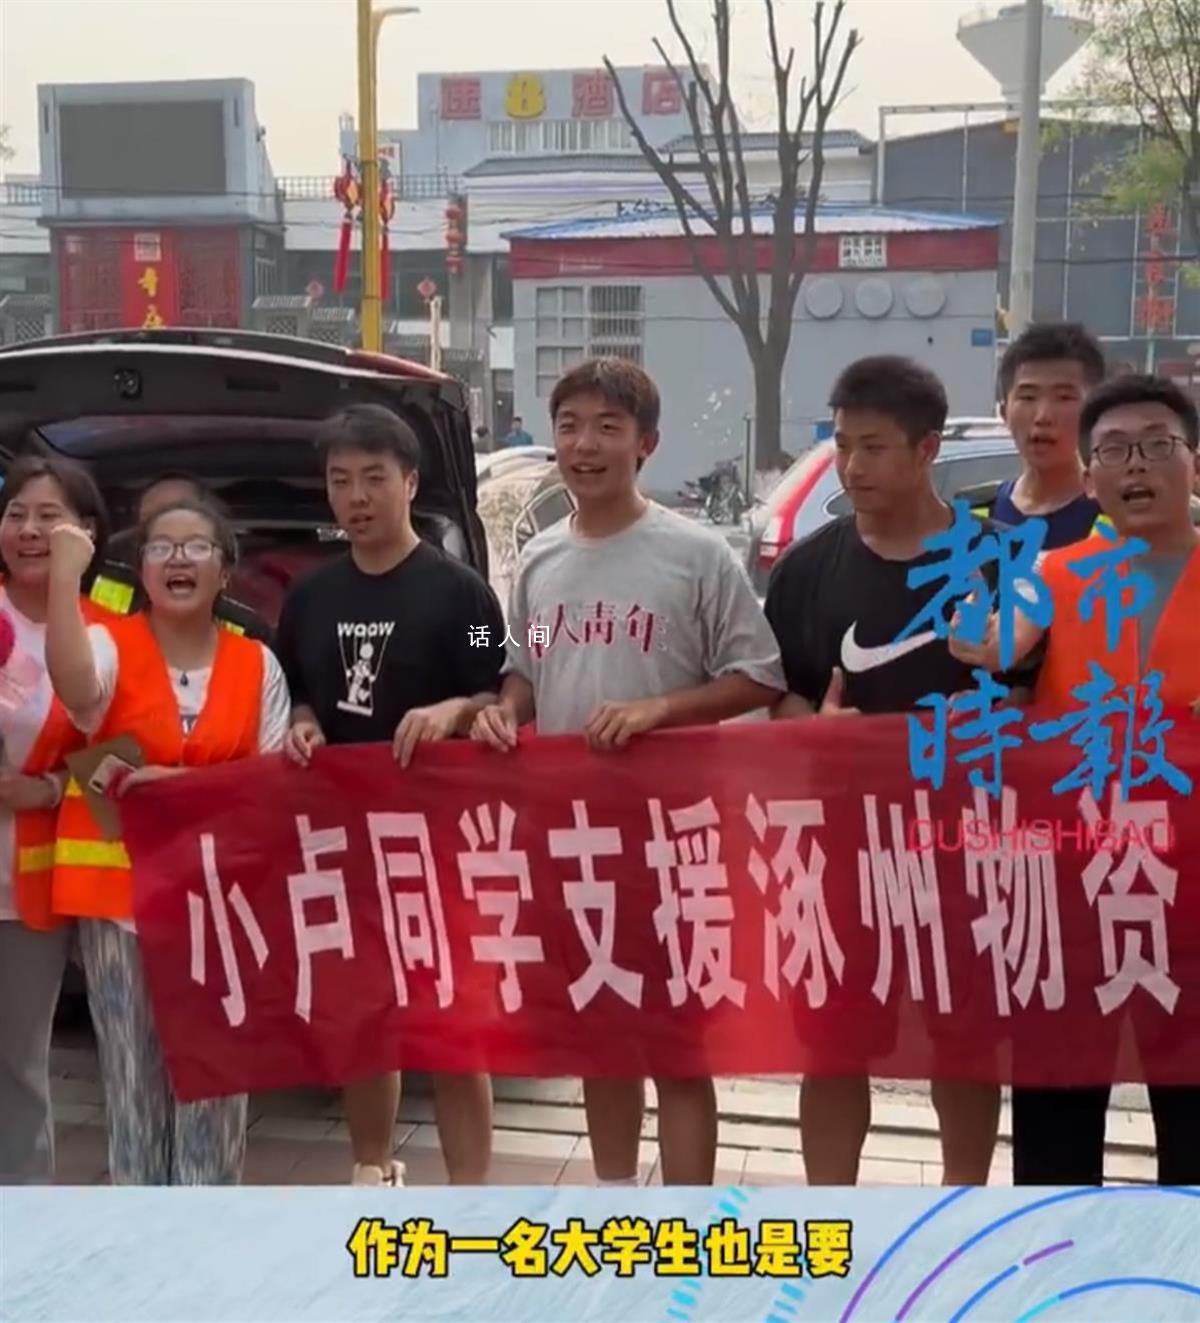 男大学生购买100包卫生巾支援涿州 送往涿州一学校及安置点